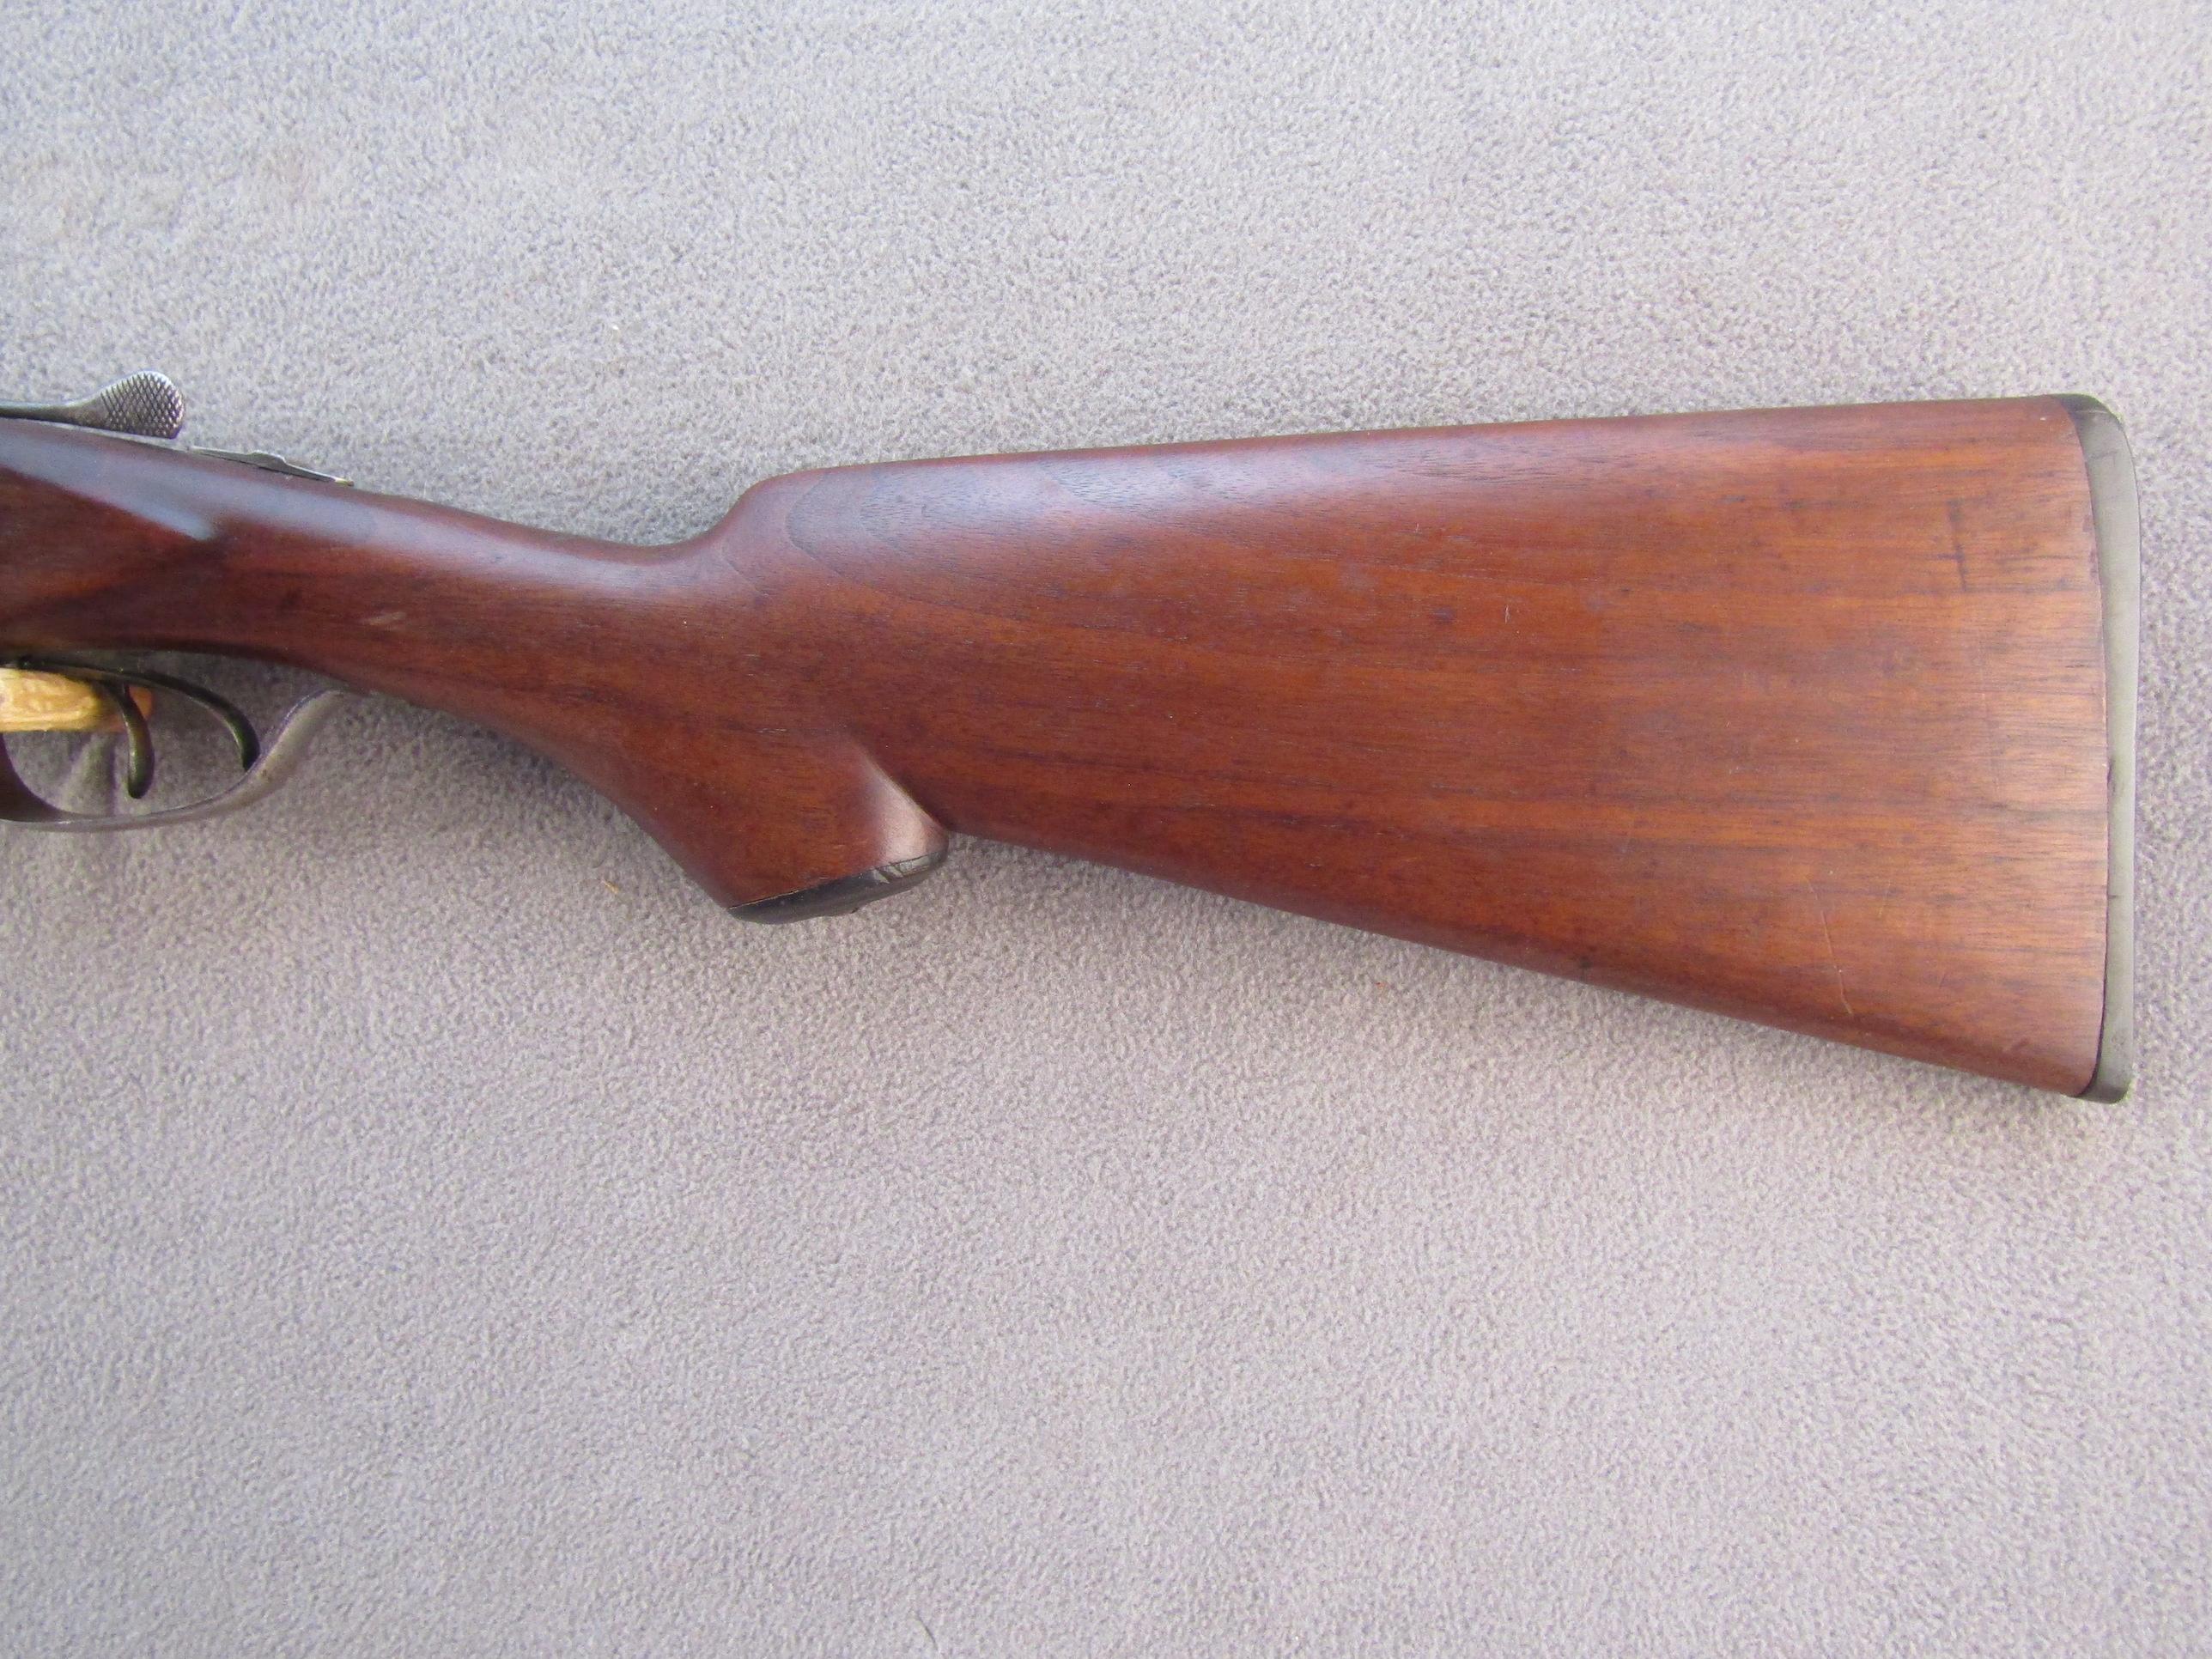 ITHACA Model SxS, Breech-Action Shotgun, 16g, S#144139